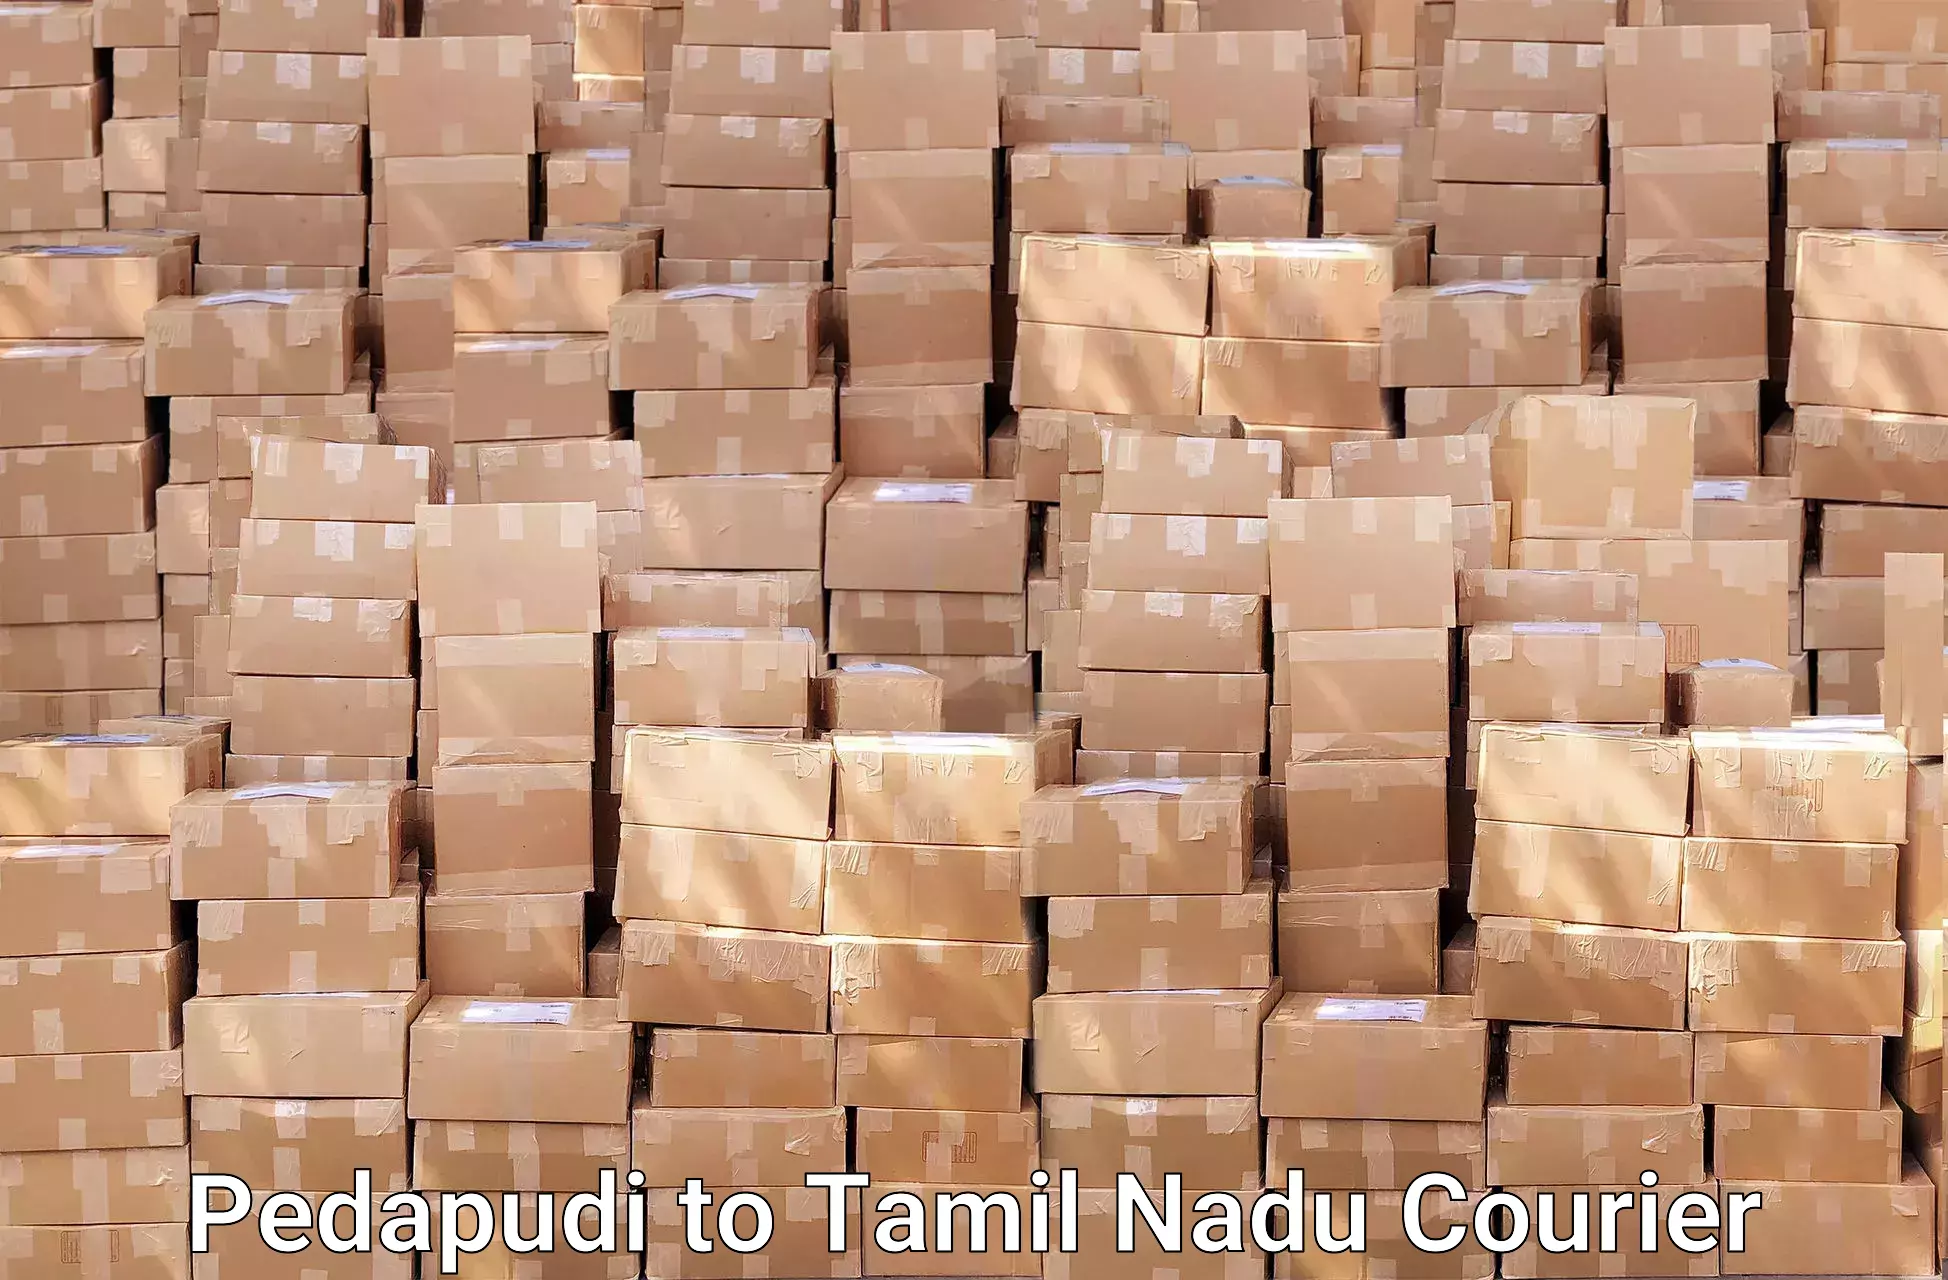 Expert goods movers Pedapudi to Pudukkottai